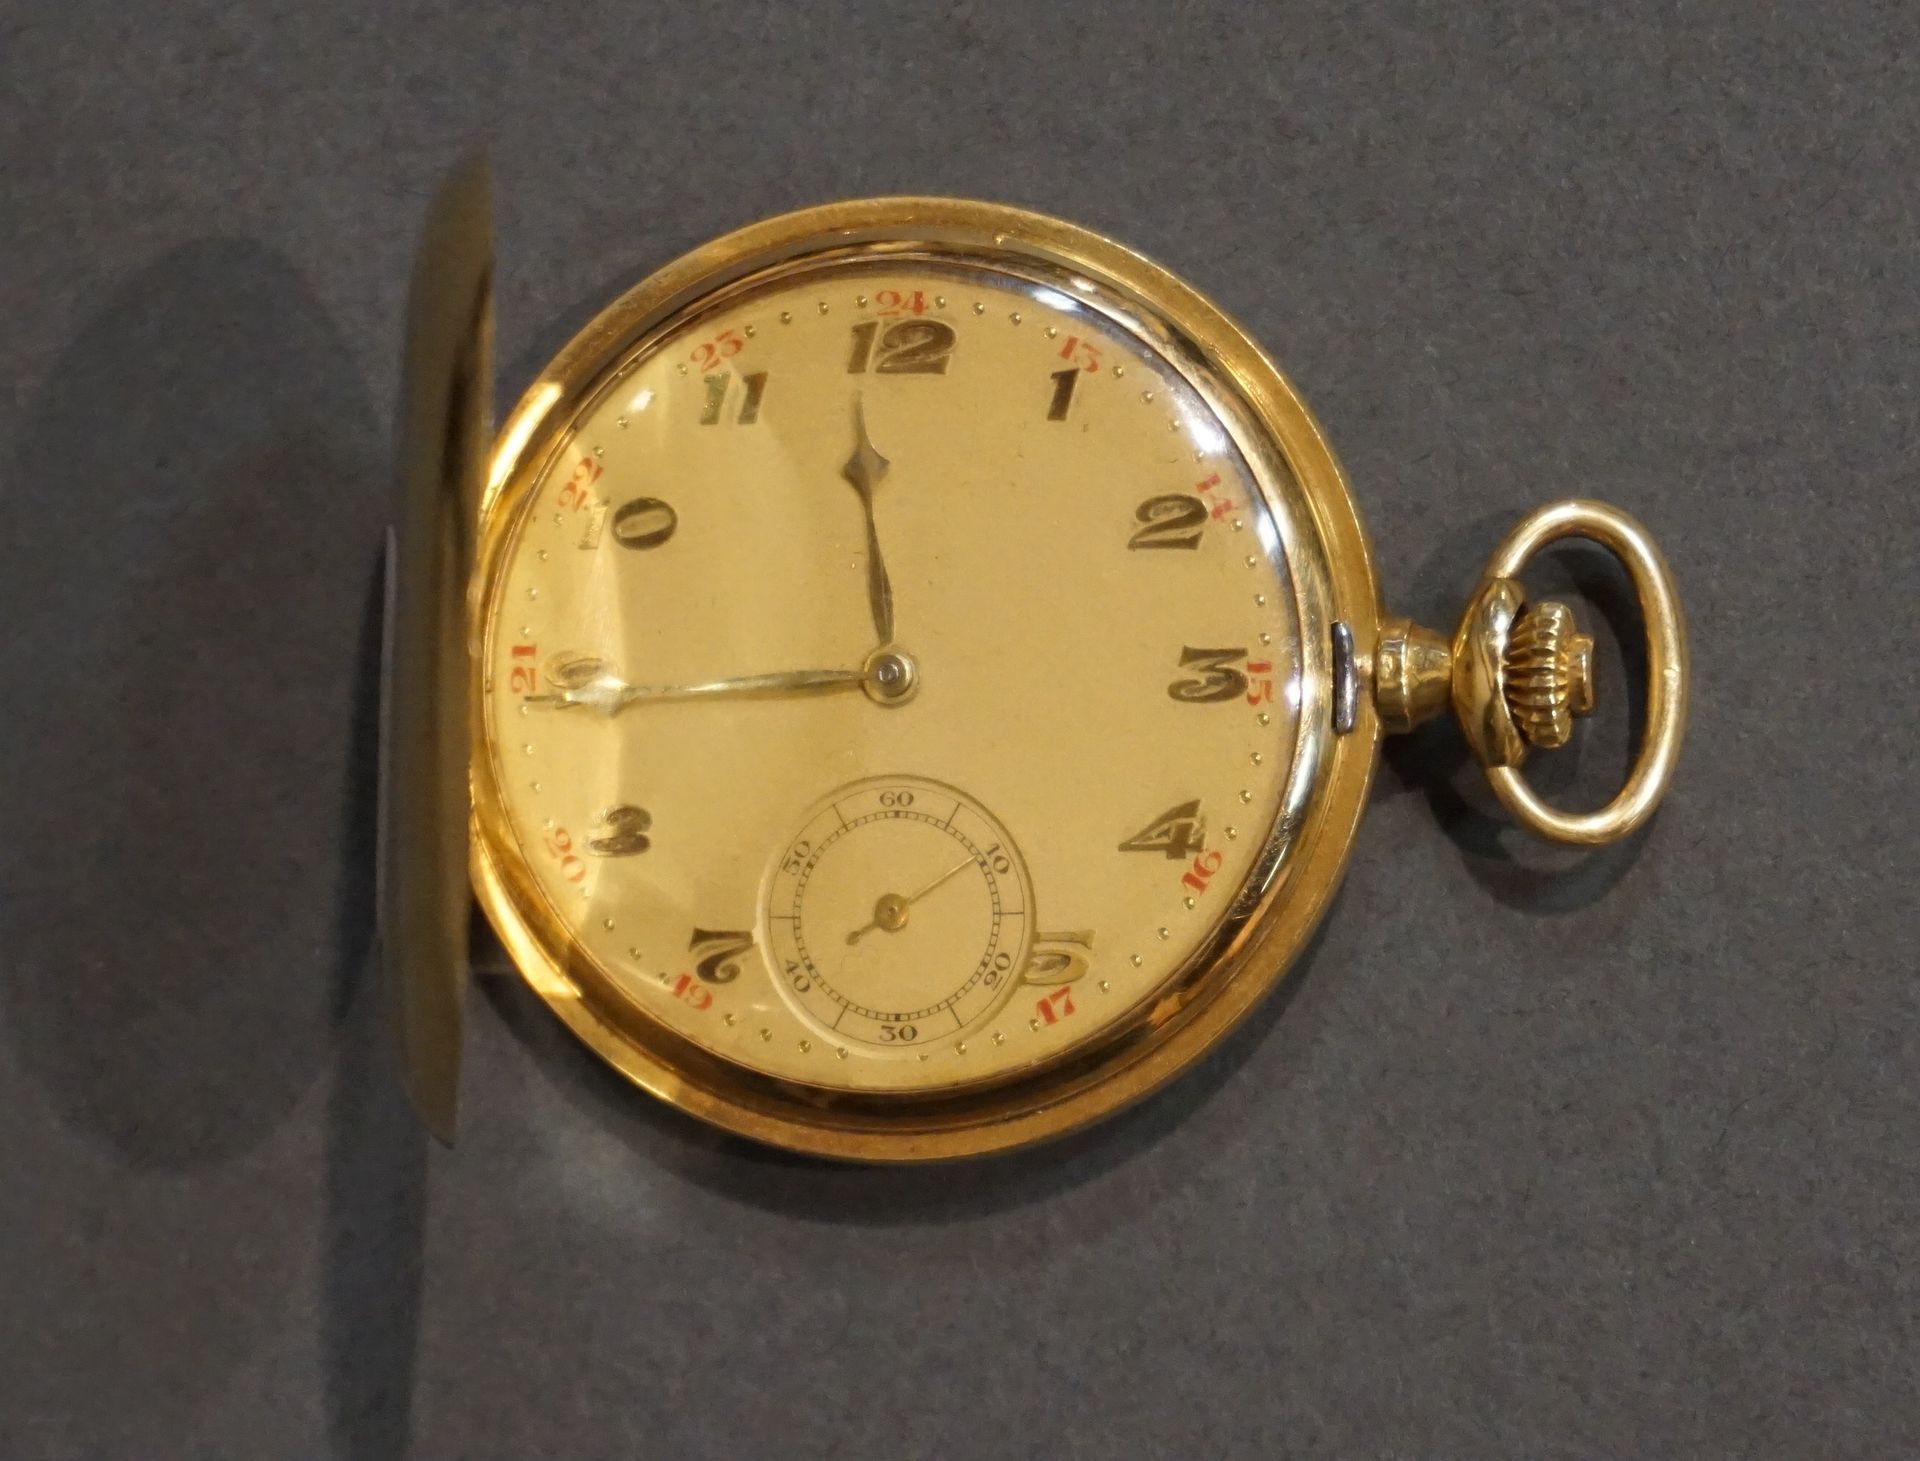 Montre Gold savonette pocket watch (gross weight: 67grs)